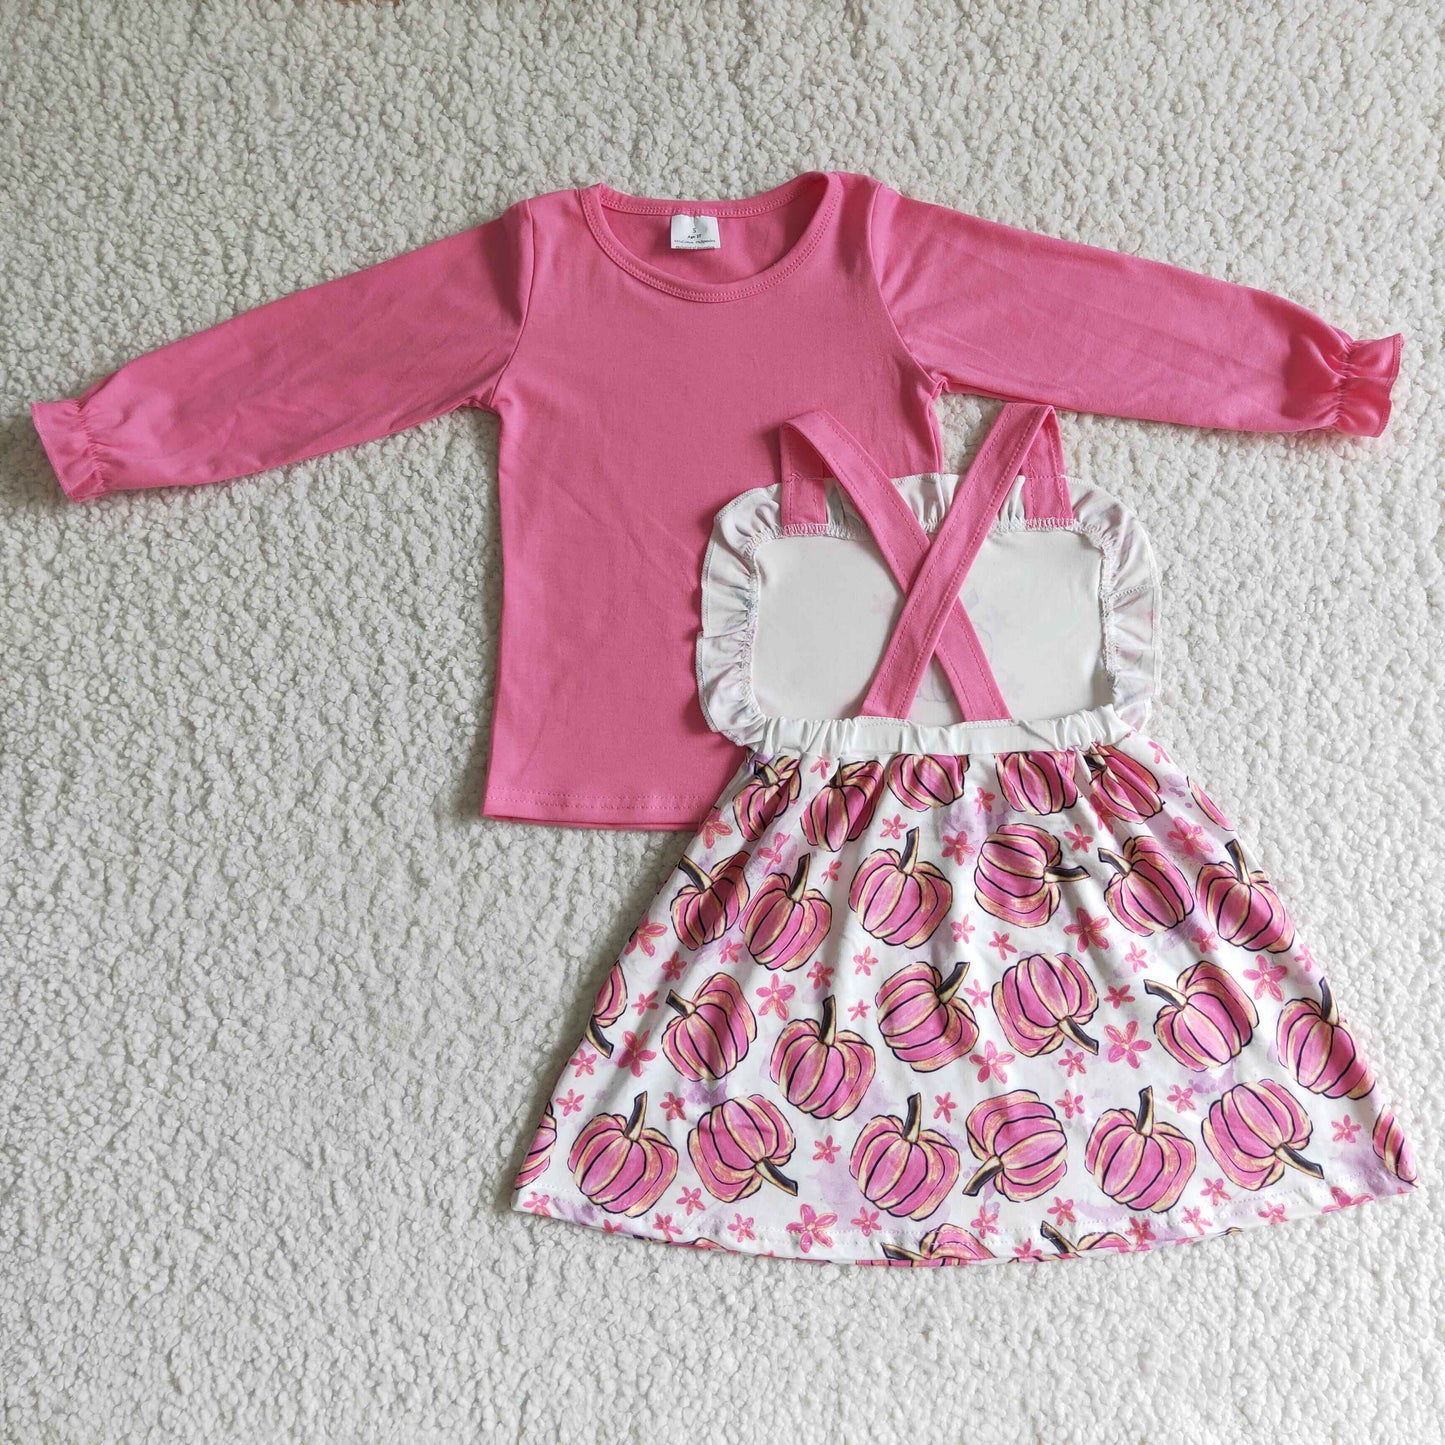 GLD0032 girl pink long sleeve shirt match pumpkin jump dress 2pieces set halloween outfit